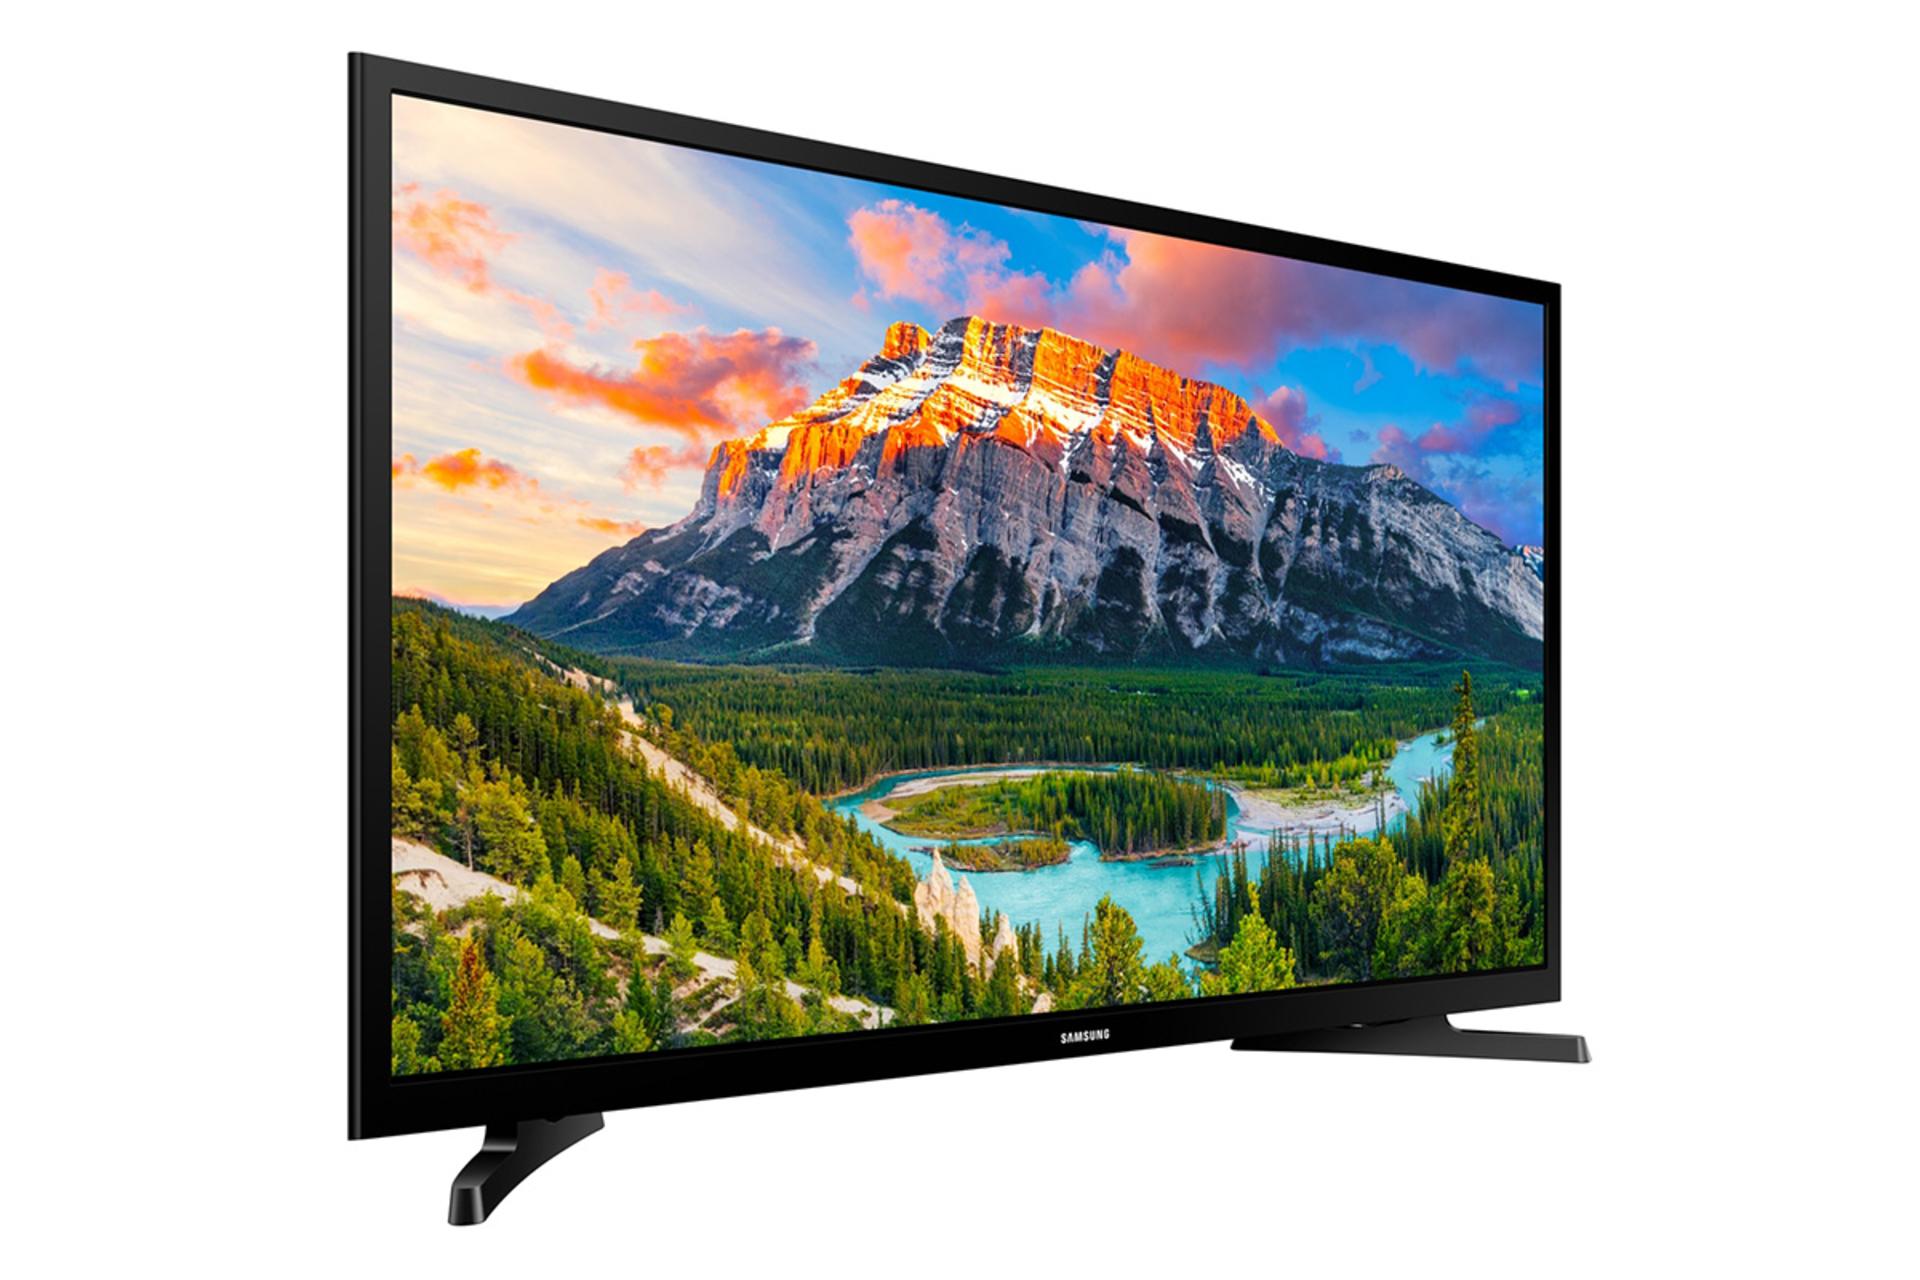 نمای نیمرخ تلویزیون سامسونگ N5300 مدل 32 اینچ با صفحه روشن